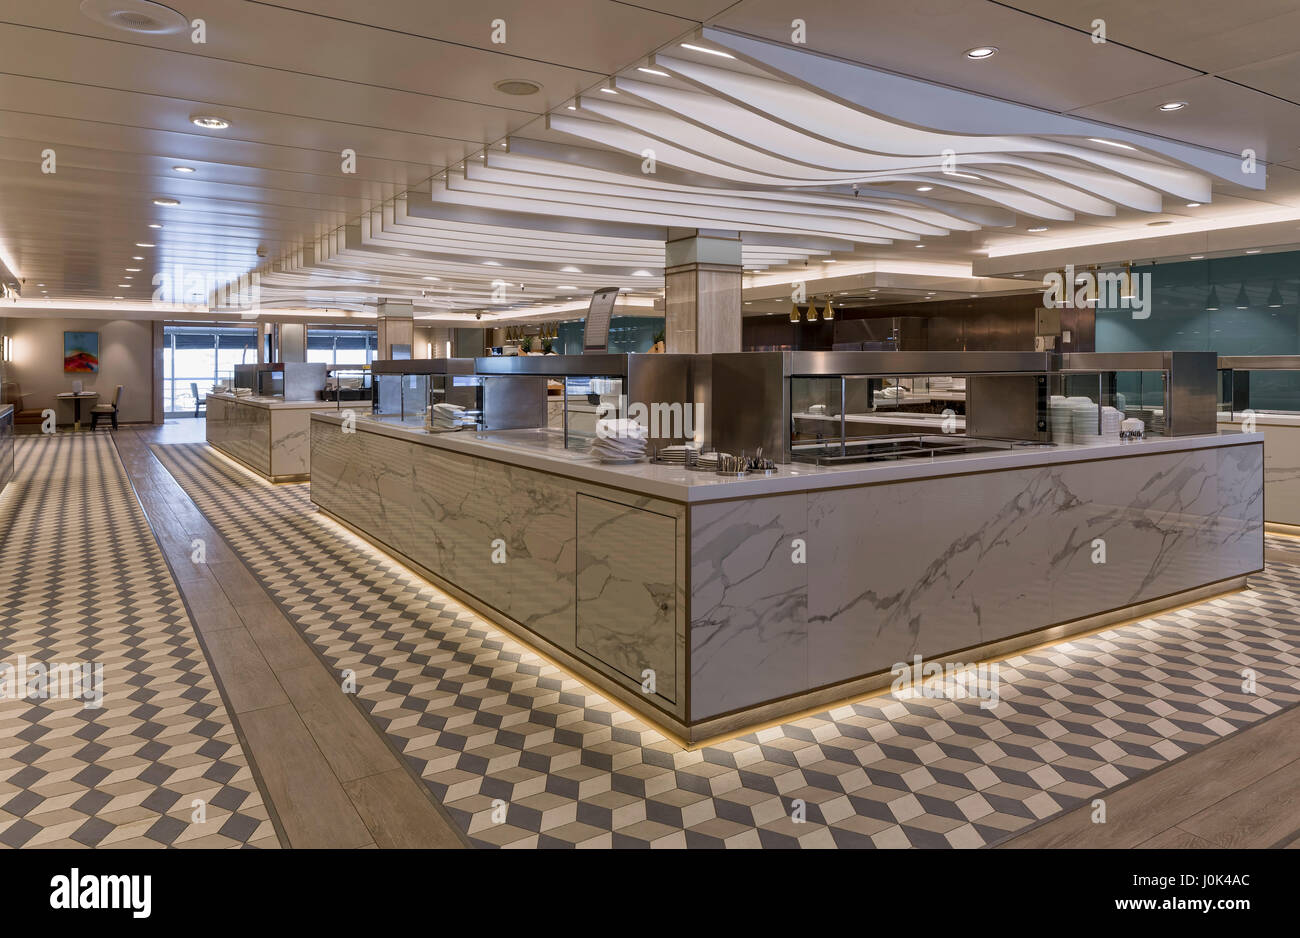 Restaurant speisenausgabe - Innenraum der Queen Mary 2. Cunard Queen Mary 2 Interieur, Southampton, Vereinigtes Königreich. Architekt: SMC Design, 2016. Stockfoto